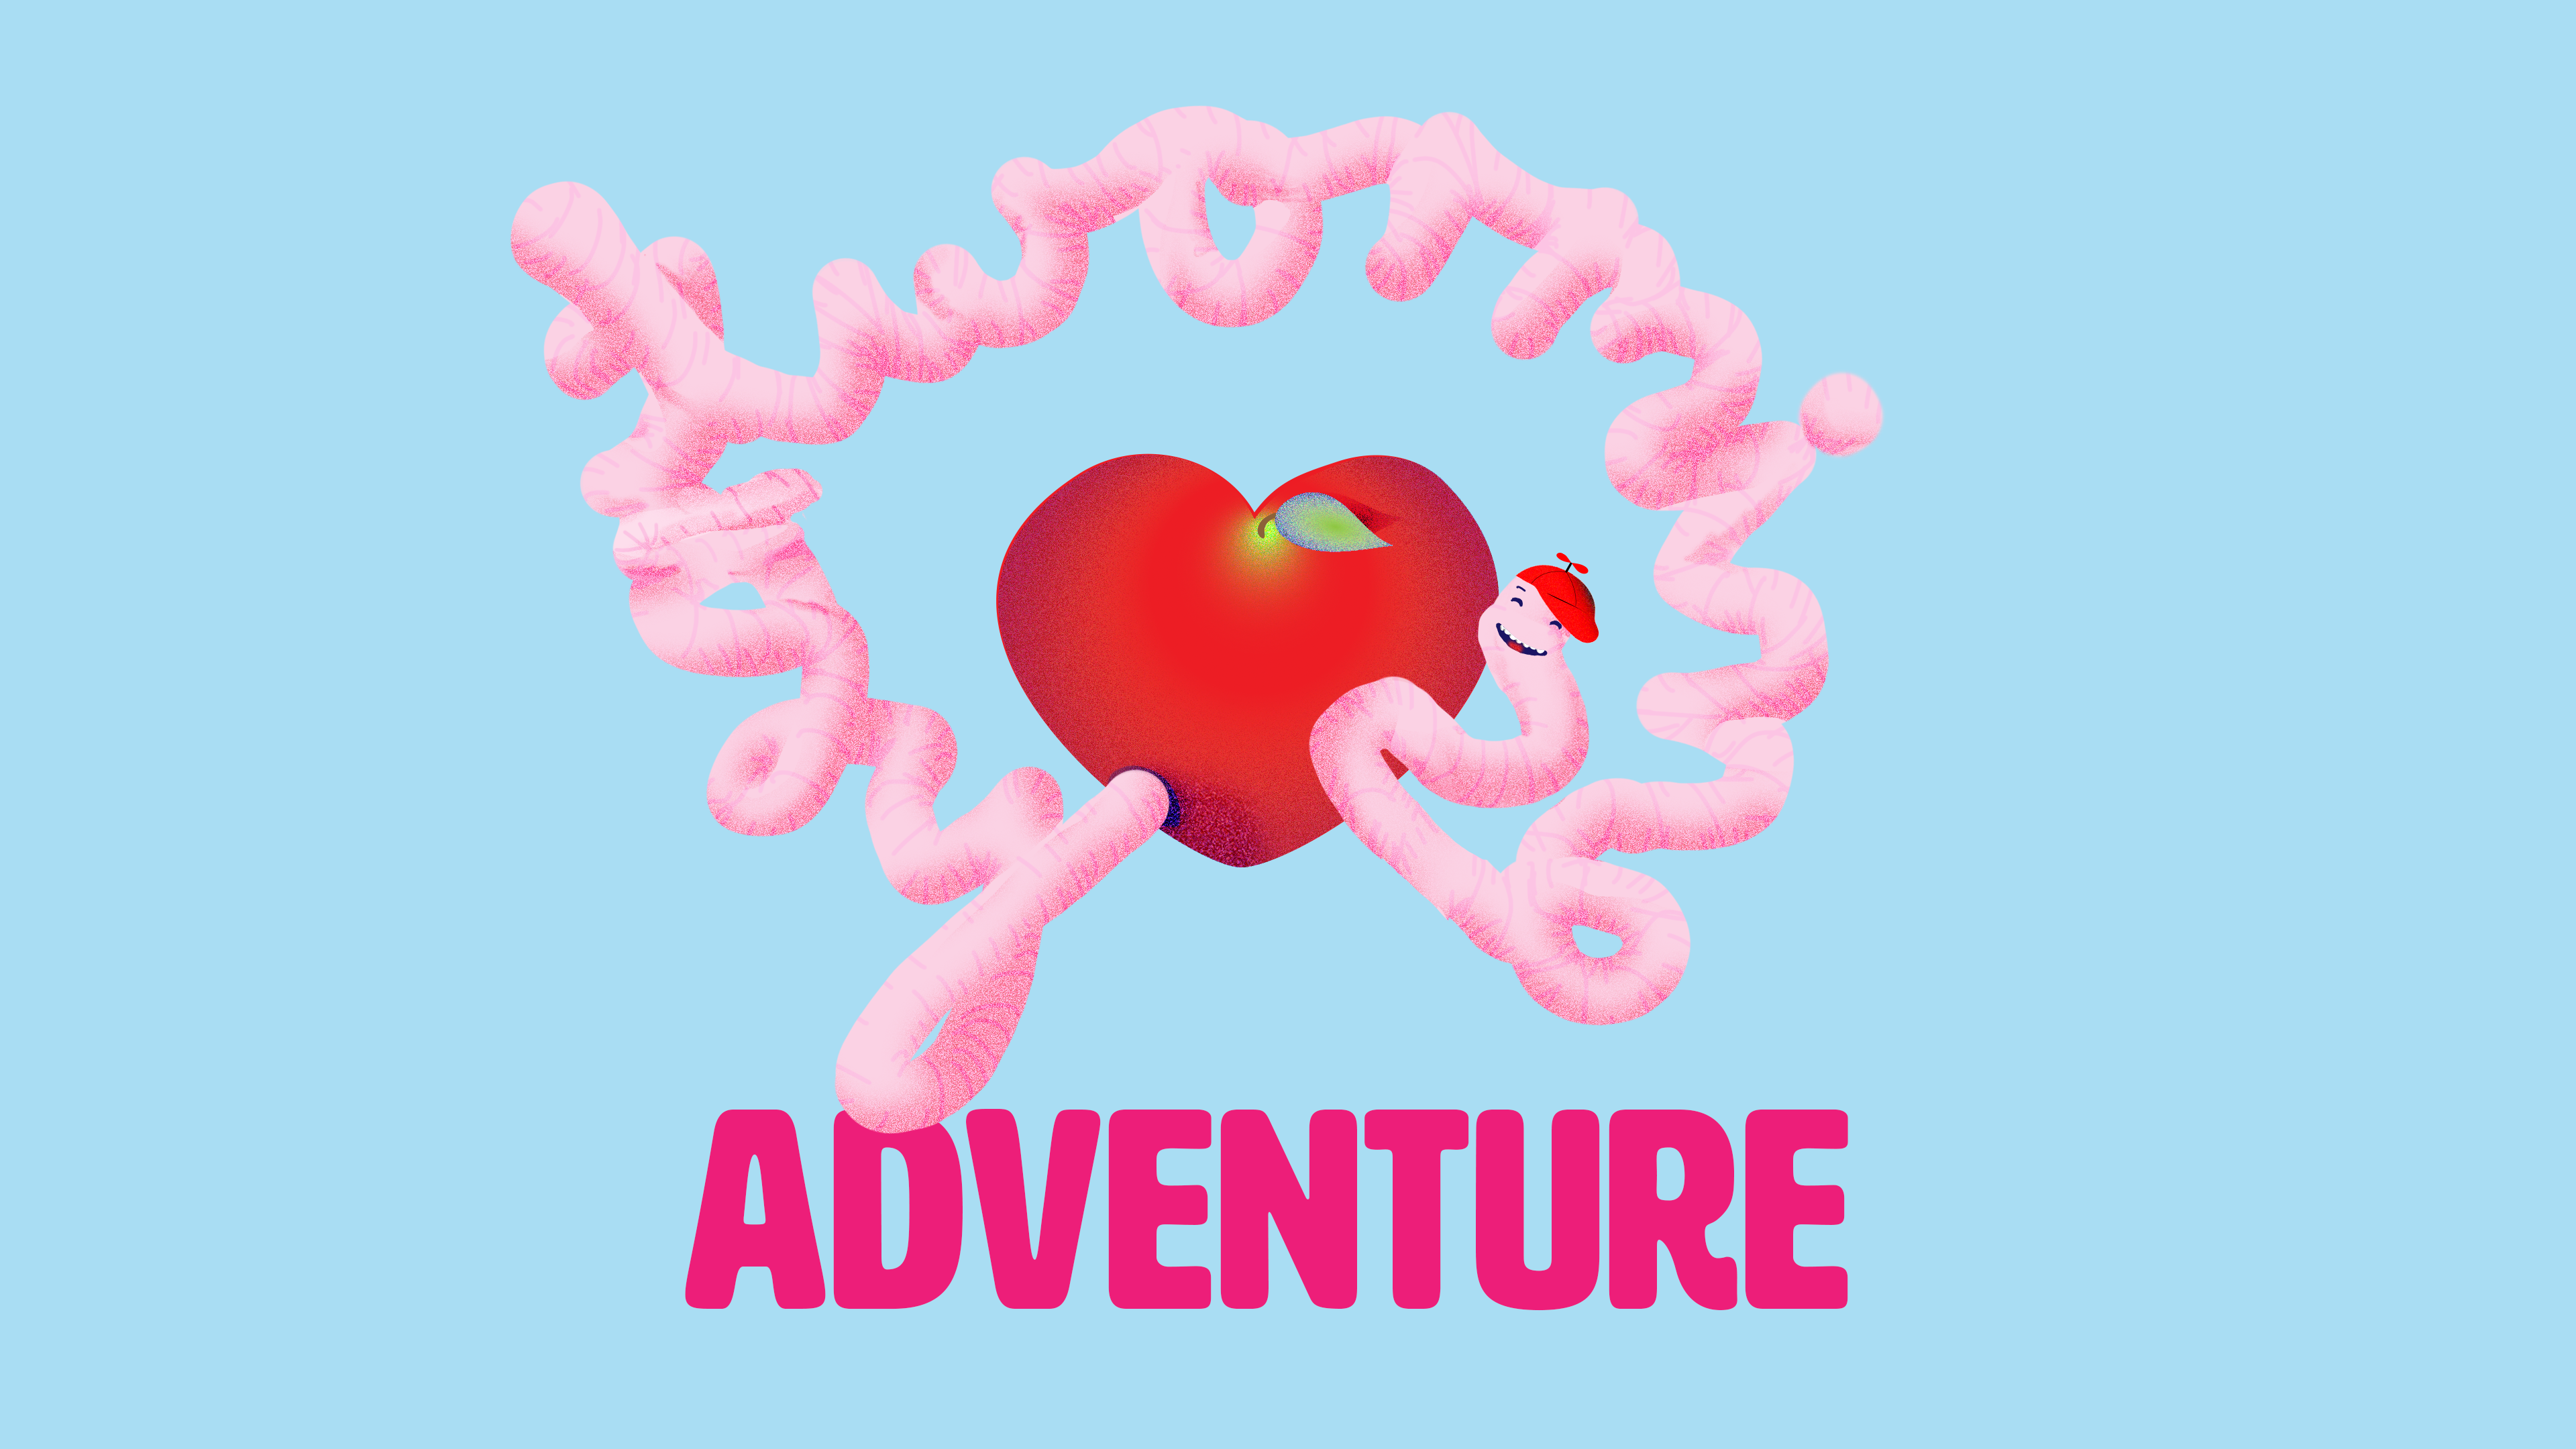 Heartworming Adventure